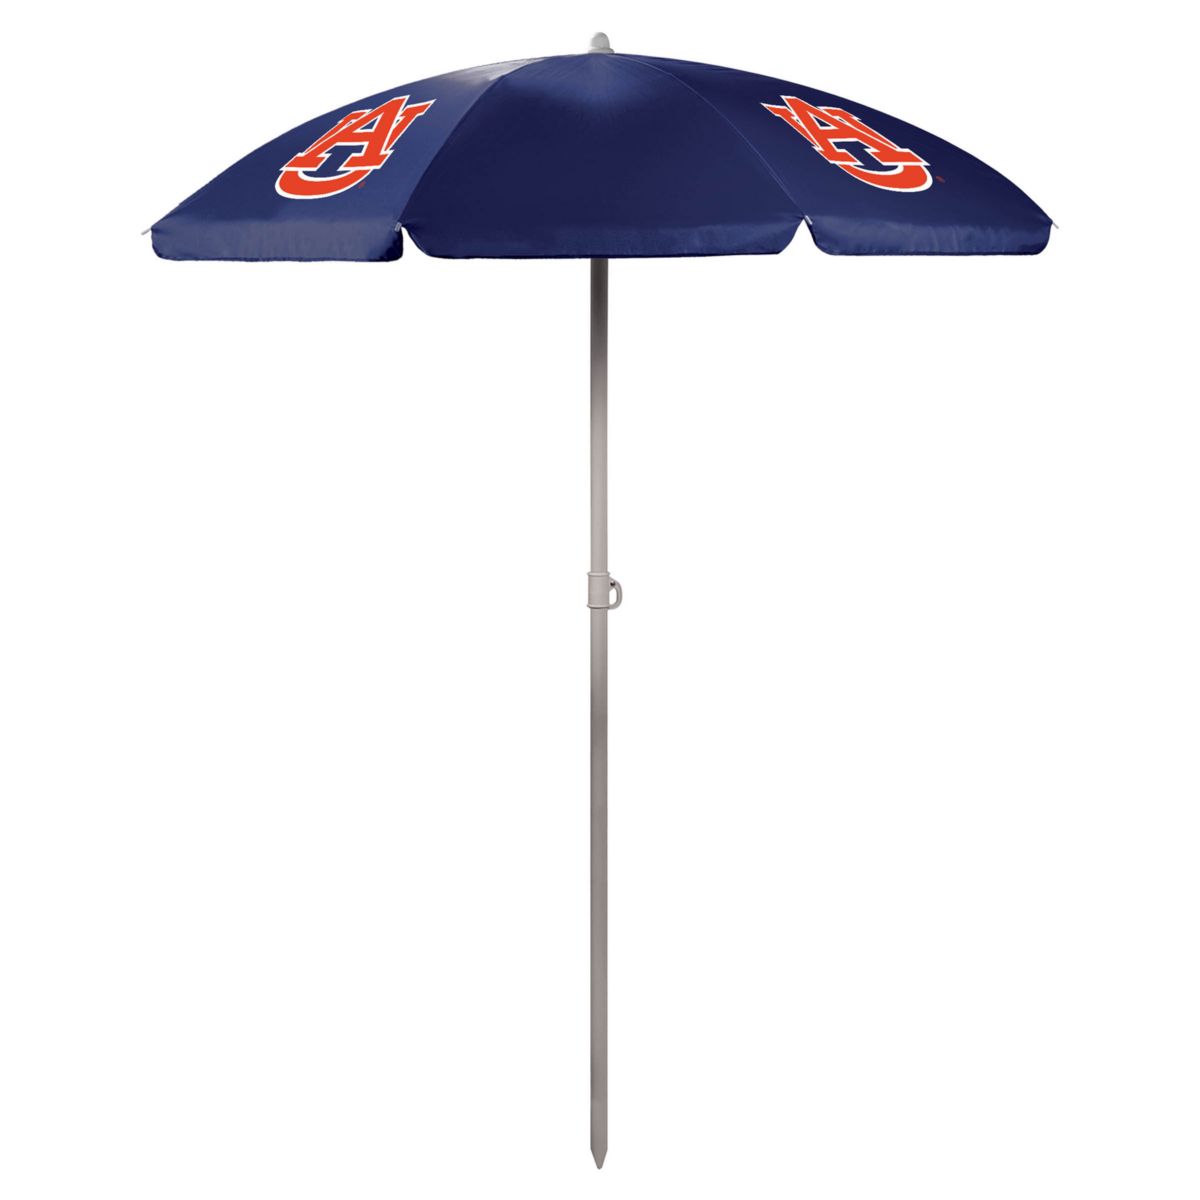 Портативный пляжный зонт NCAA Unbranded